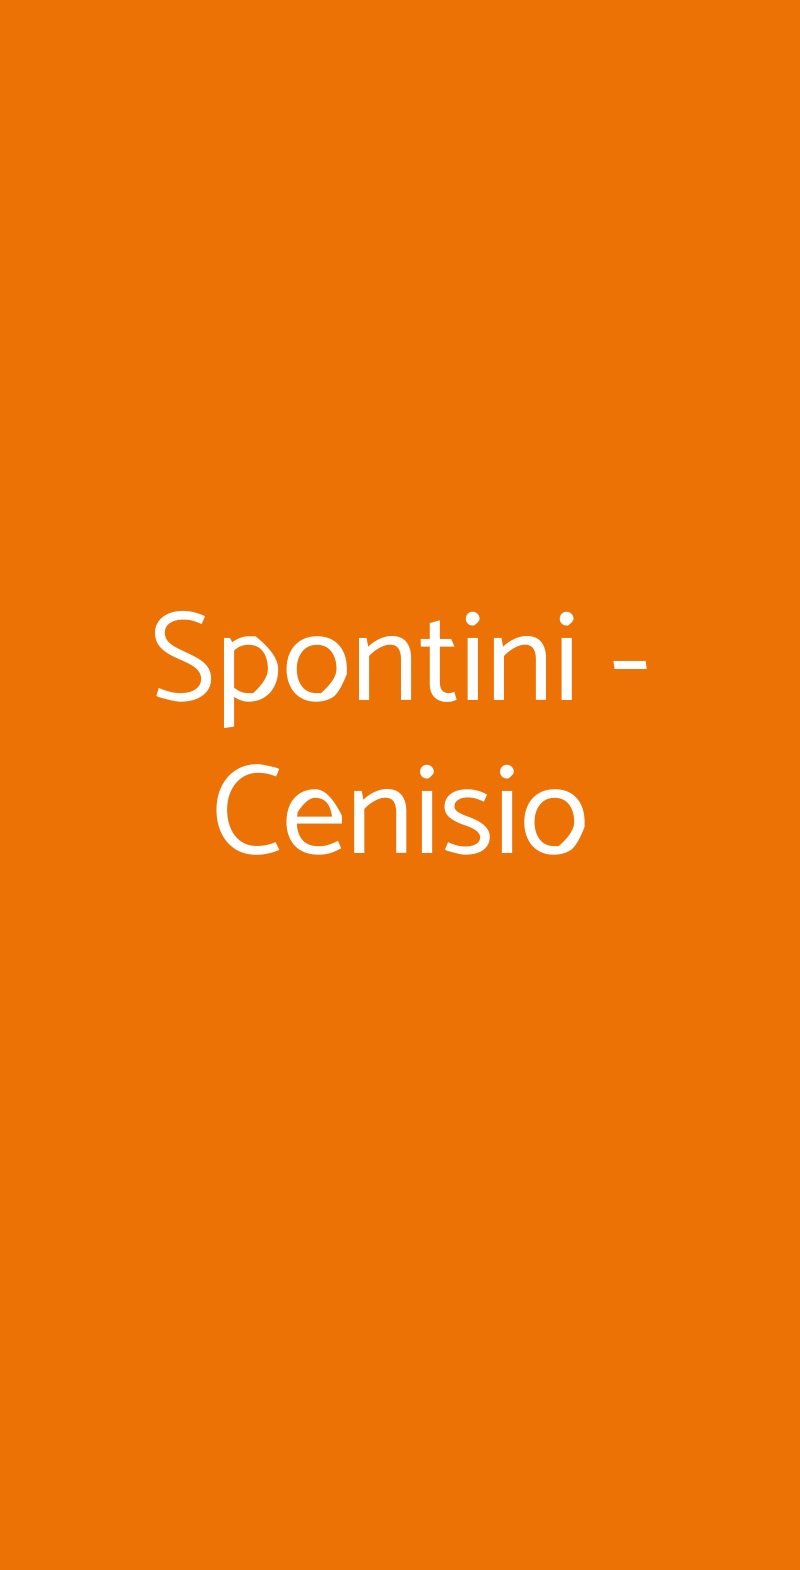 Spontini - Cenisio Milano menù 1 pagina